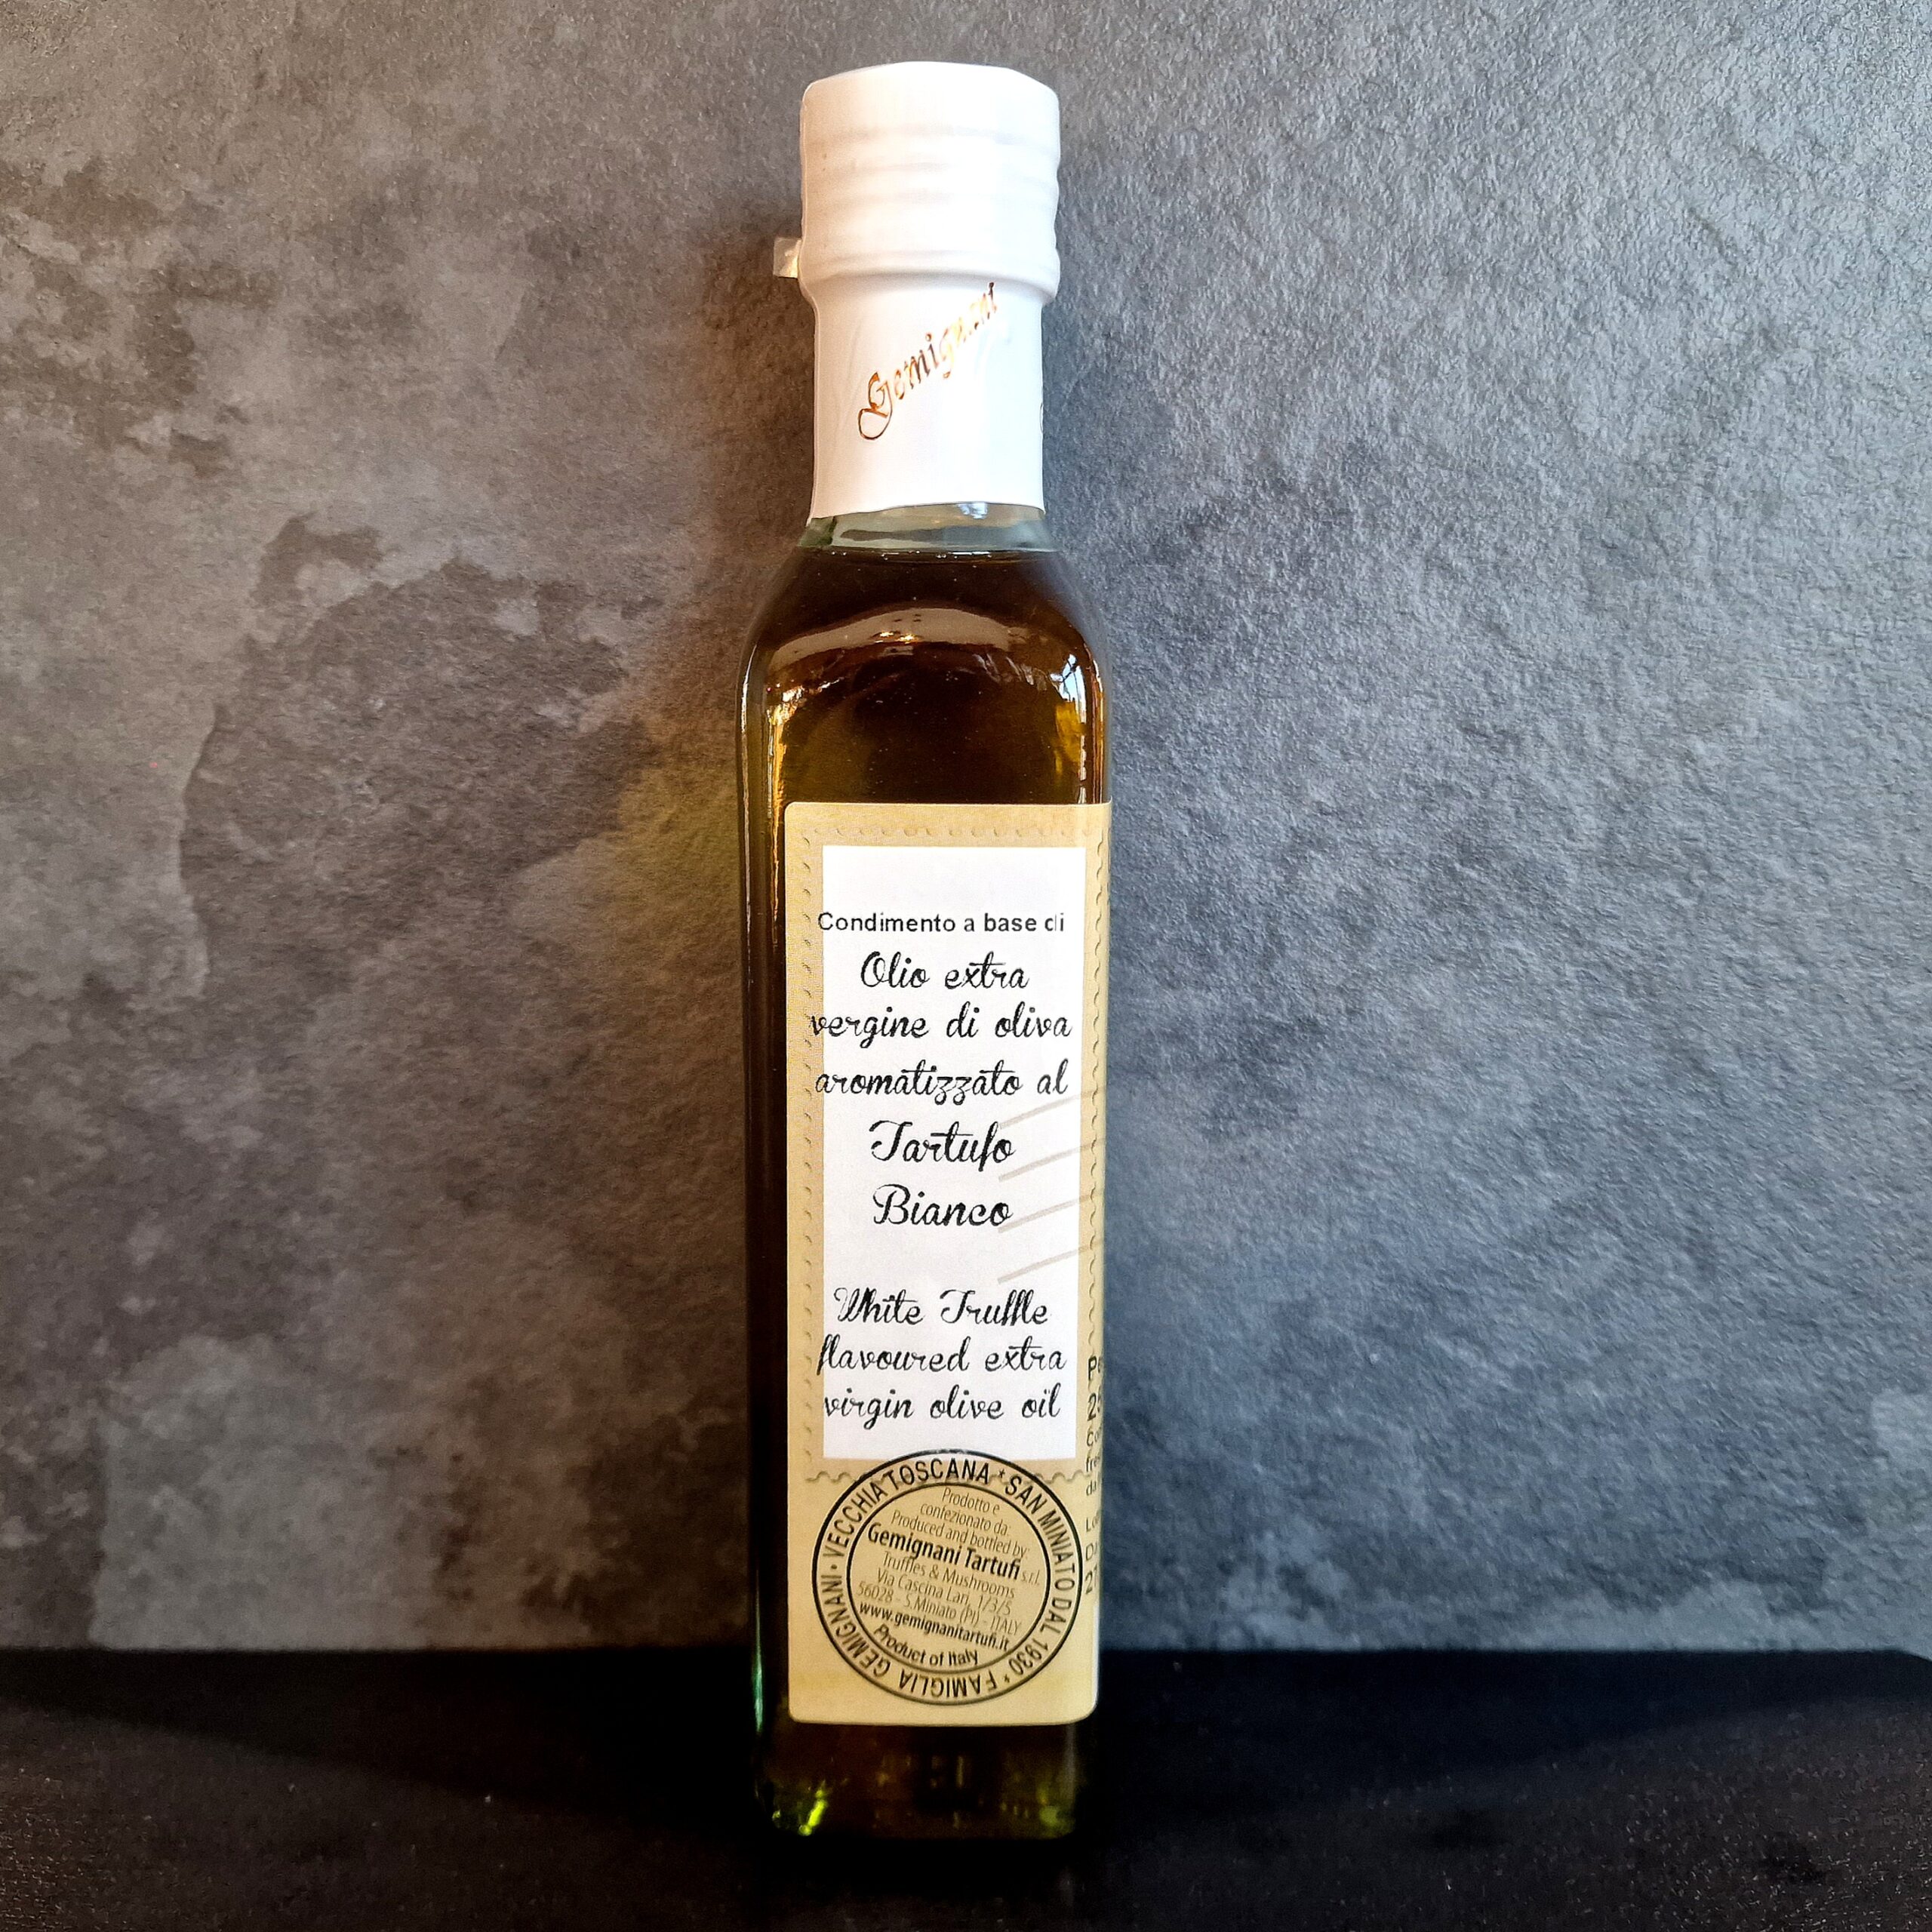 Condimento in Olio Extra Vergine d'oliva aromatizzato al Tartufo